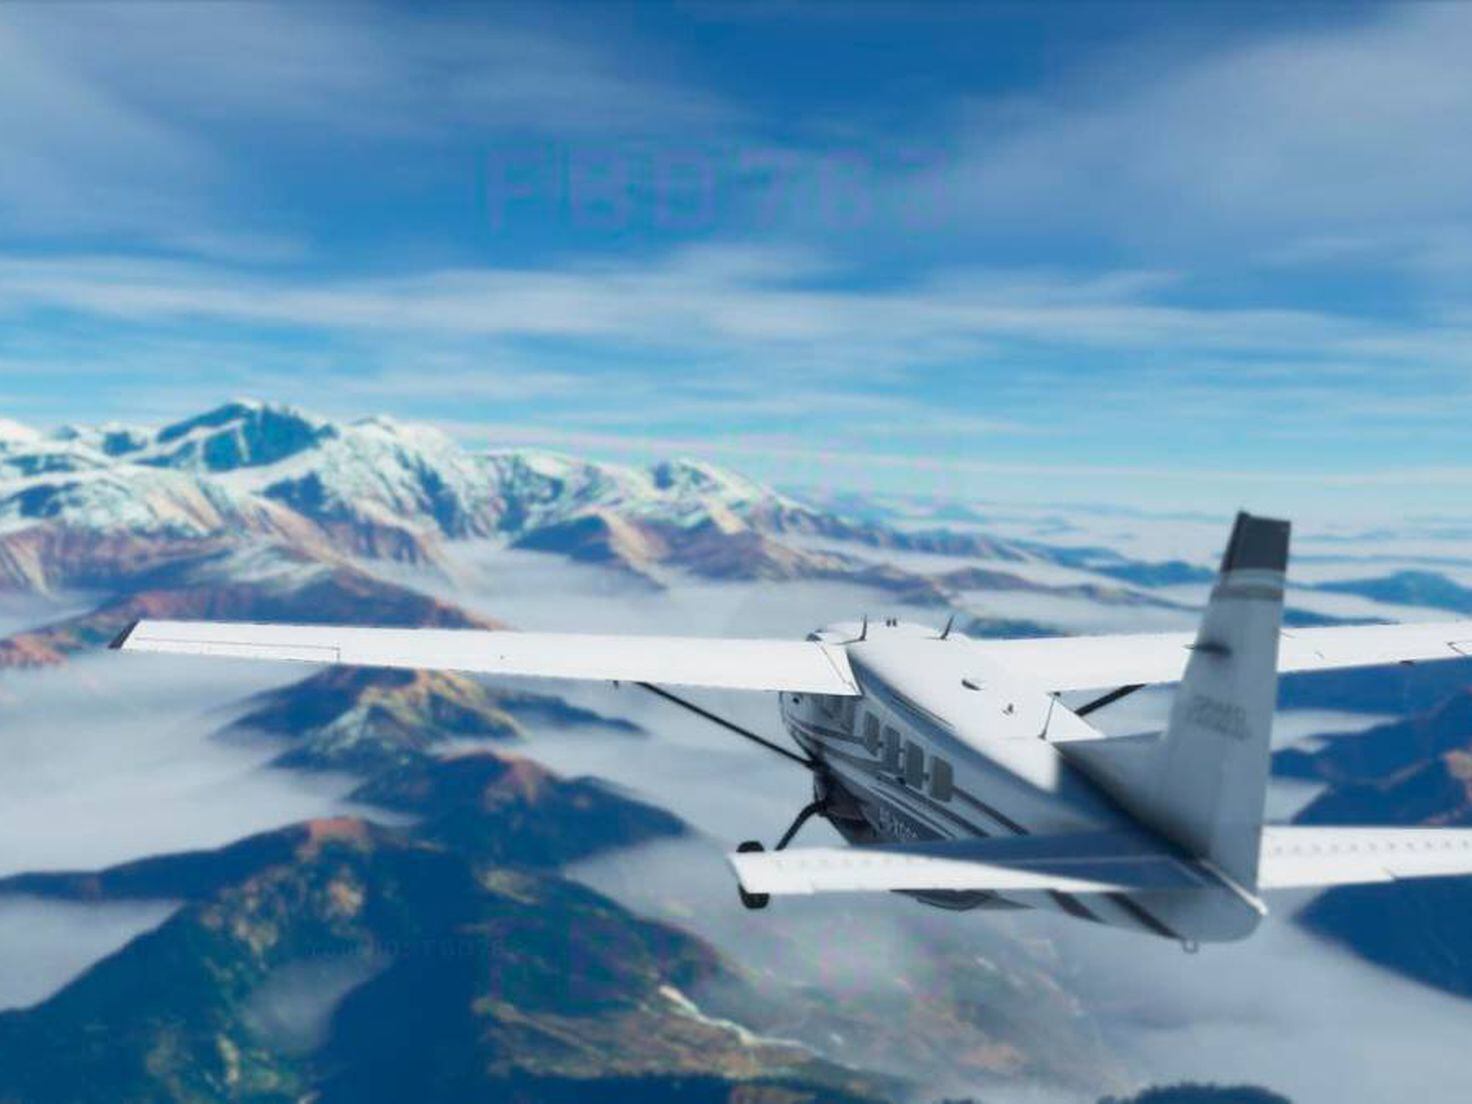 Microsoft Flight Simulator: requisitos mínimos y recomendados para